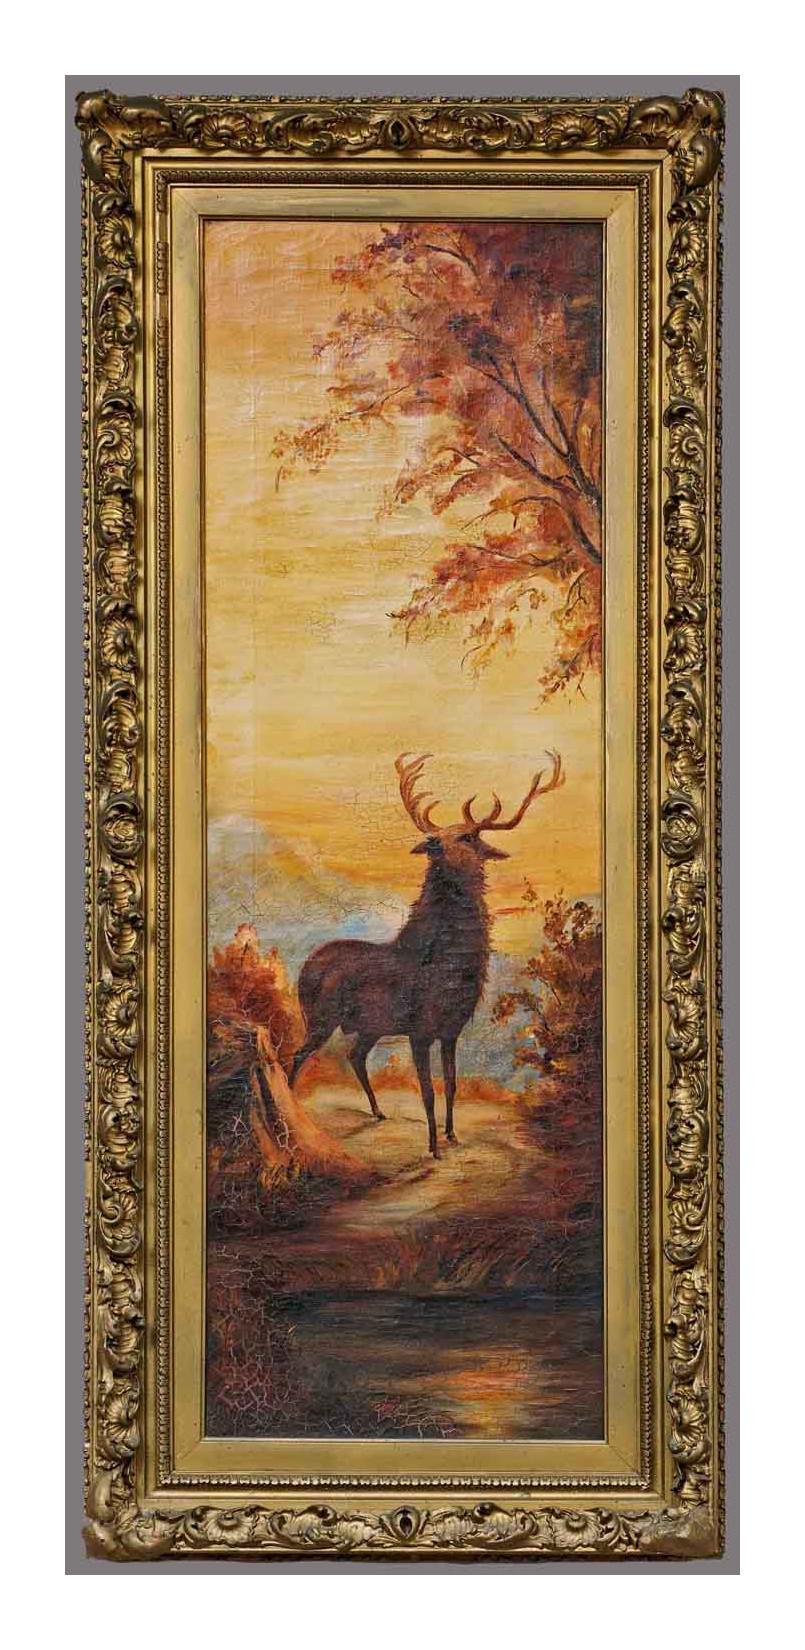 Zwei Hirsch in Winterlandschaft, Twilight, Öl auf Leinwand, datiert 1912 – Painting von Unknown